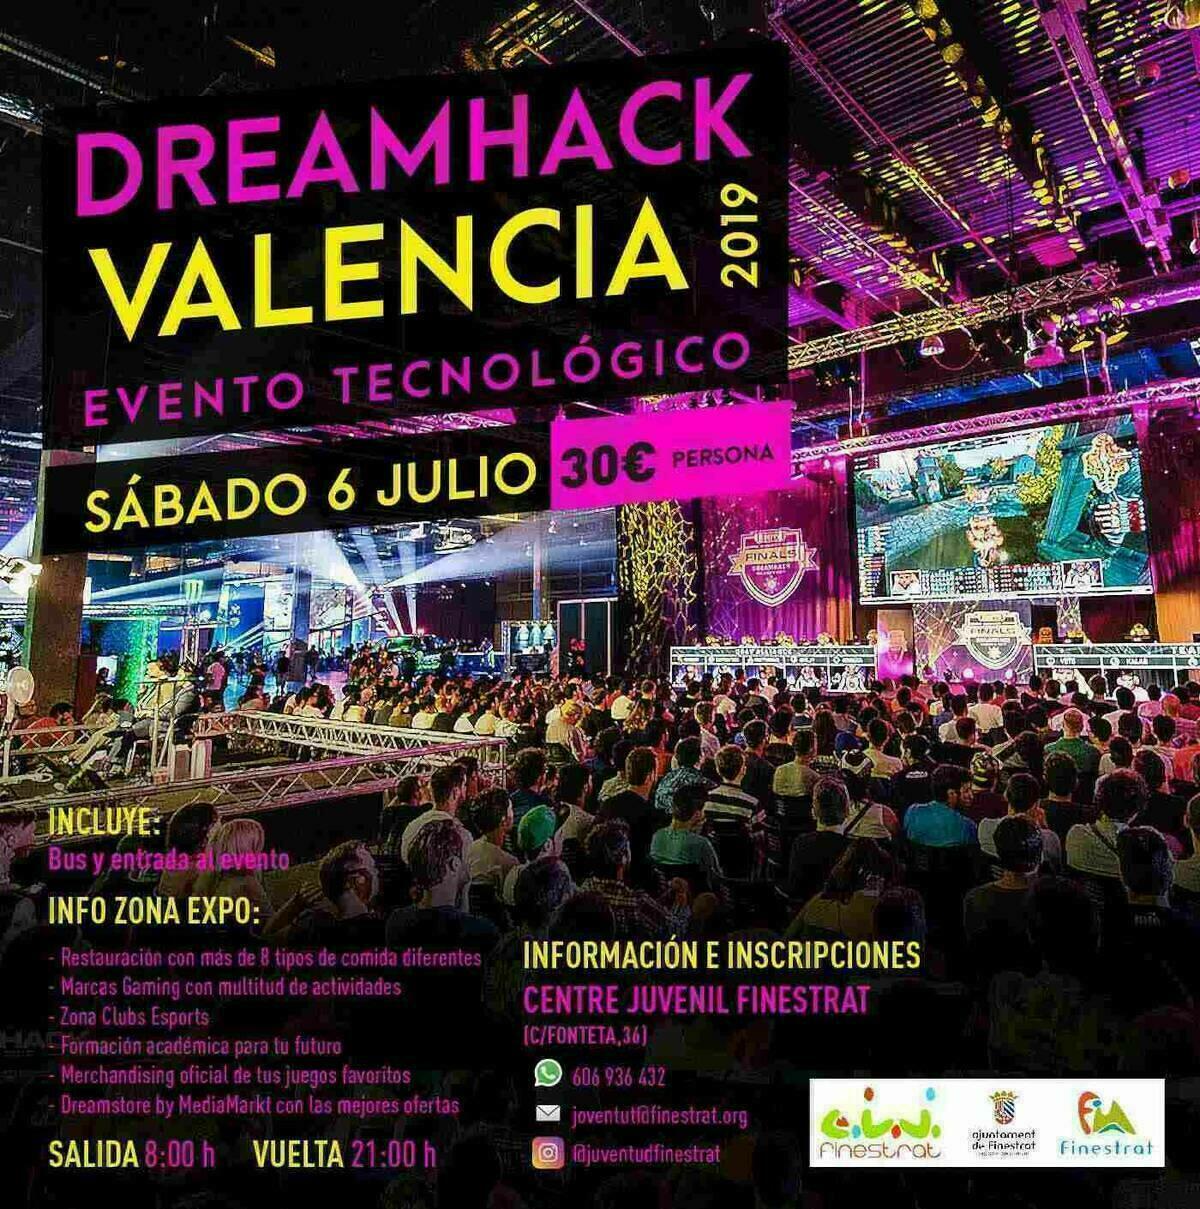 La concejalía de Juventud de Finestrat organiza una visita al festival “Dreamhack Valencia” para el sábado 6 de julio